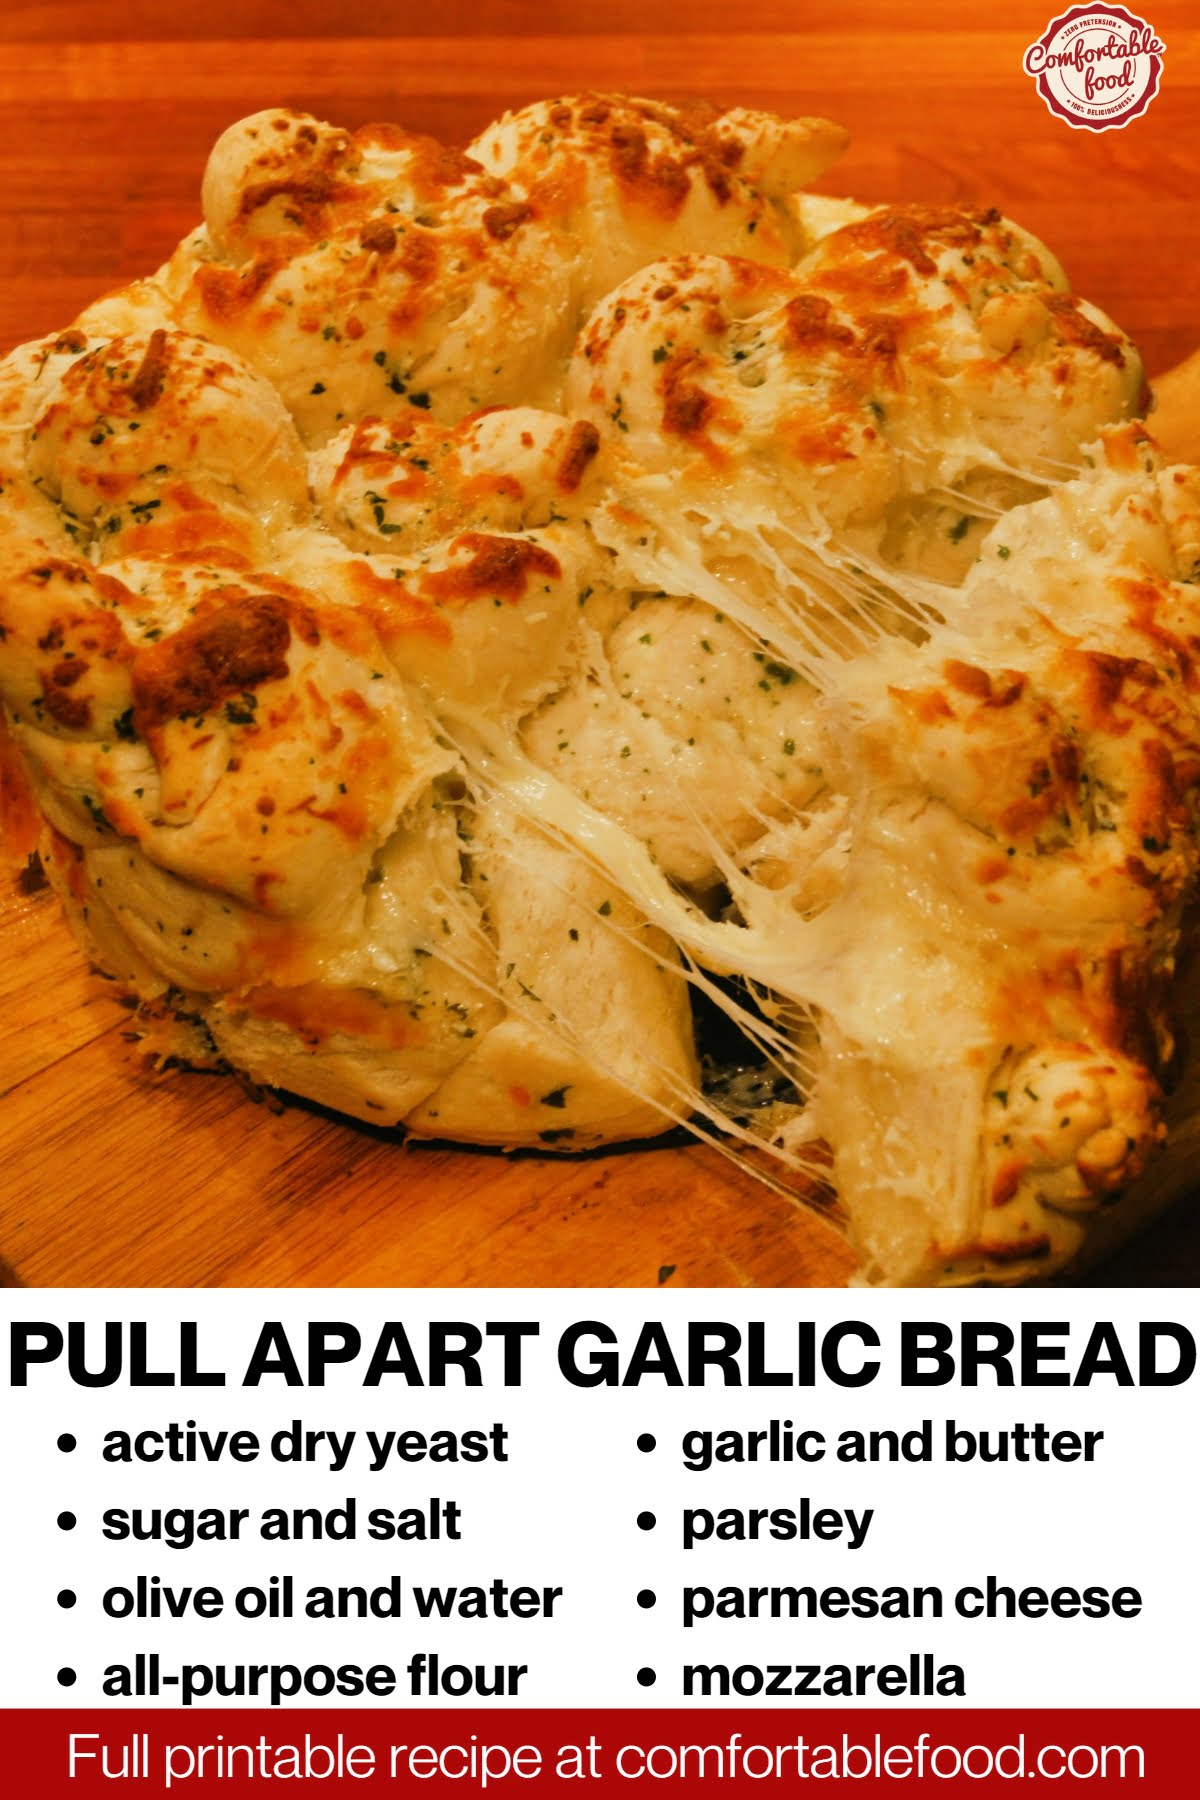 Pulled apart garlic bread socials